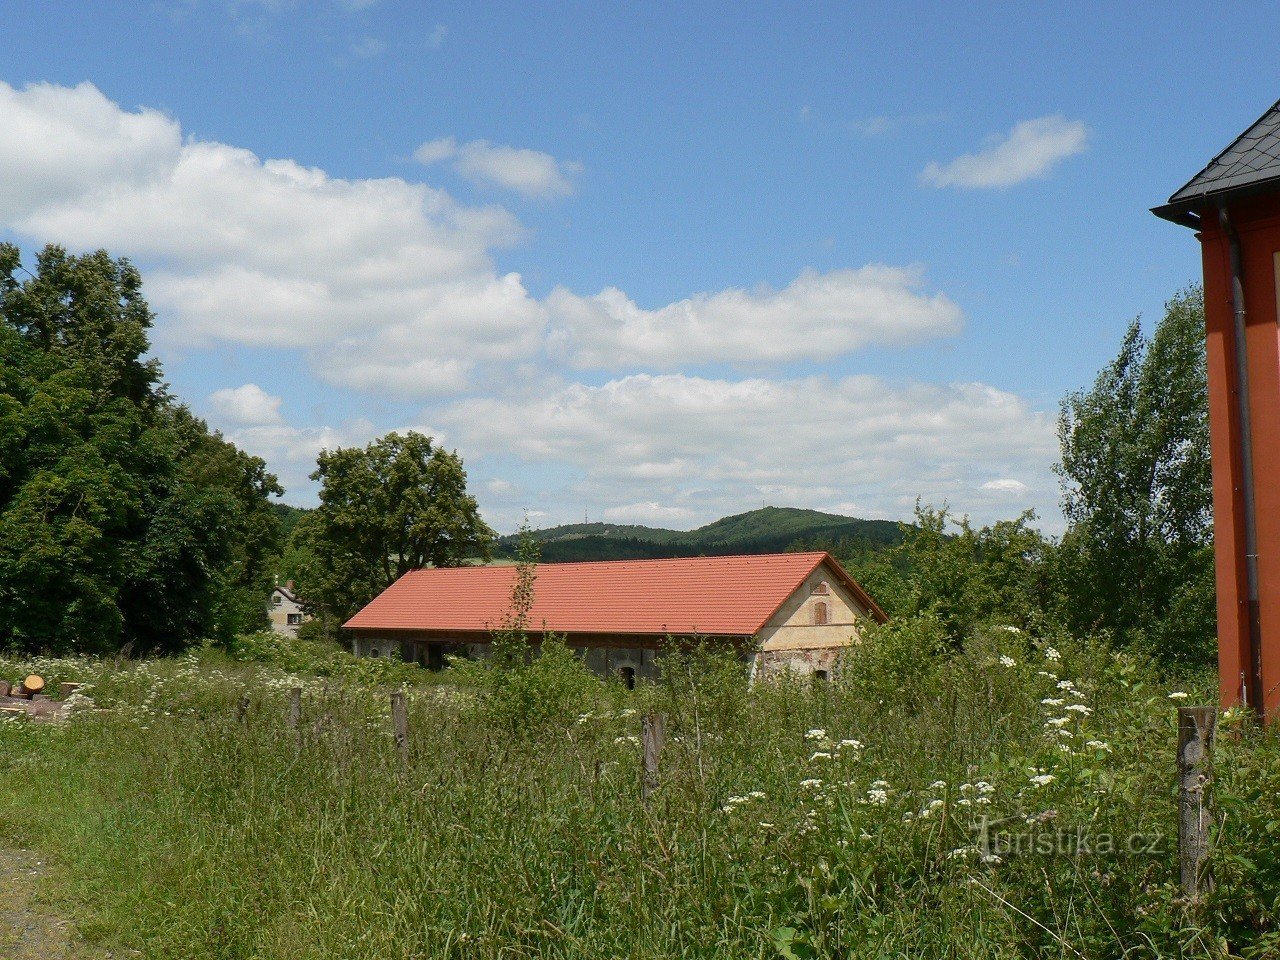 Tetětice, edificio agrícola en el fondo de Doubrava